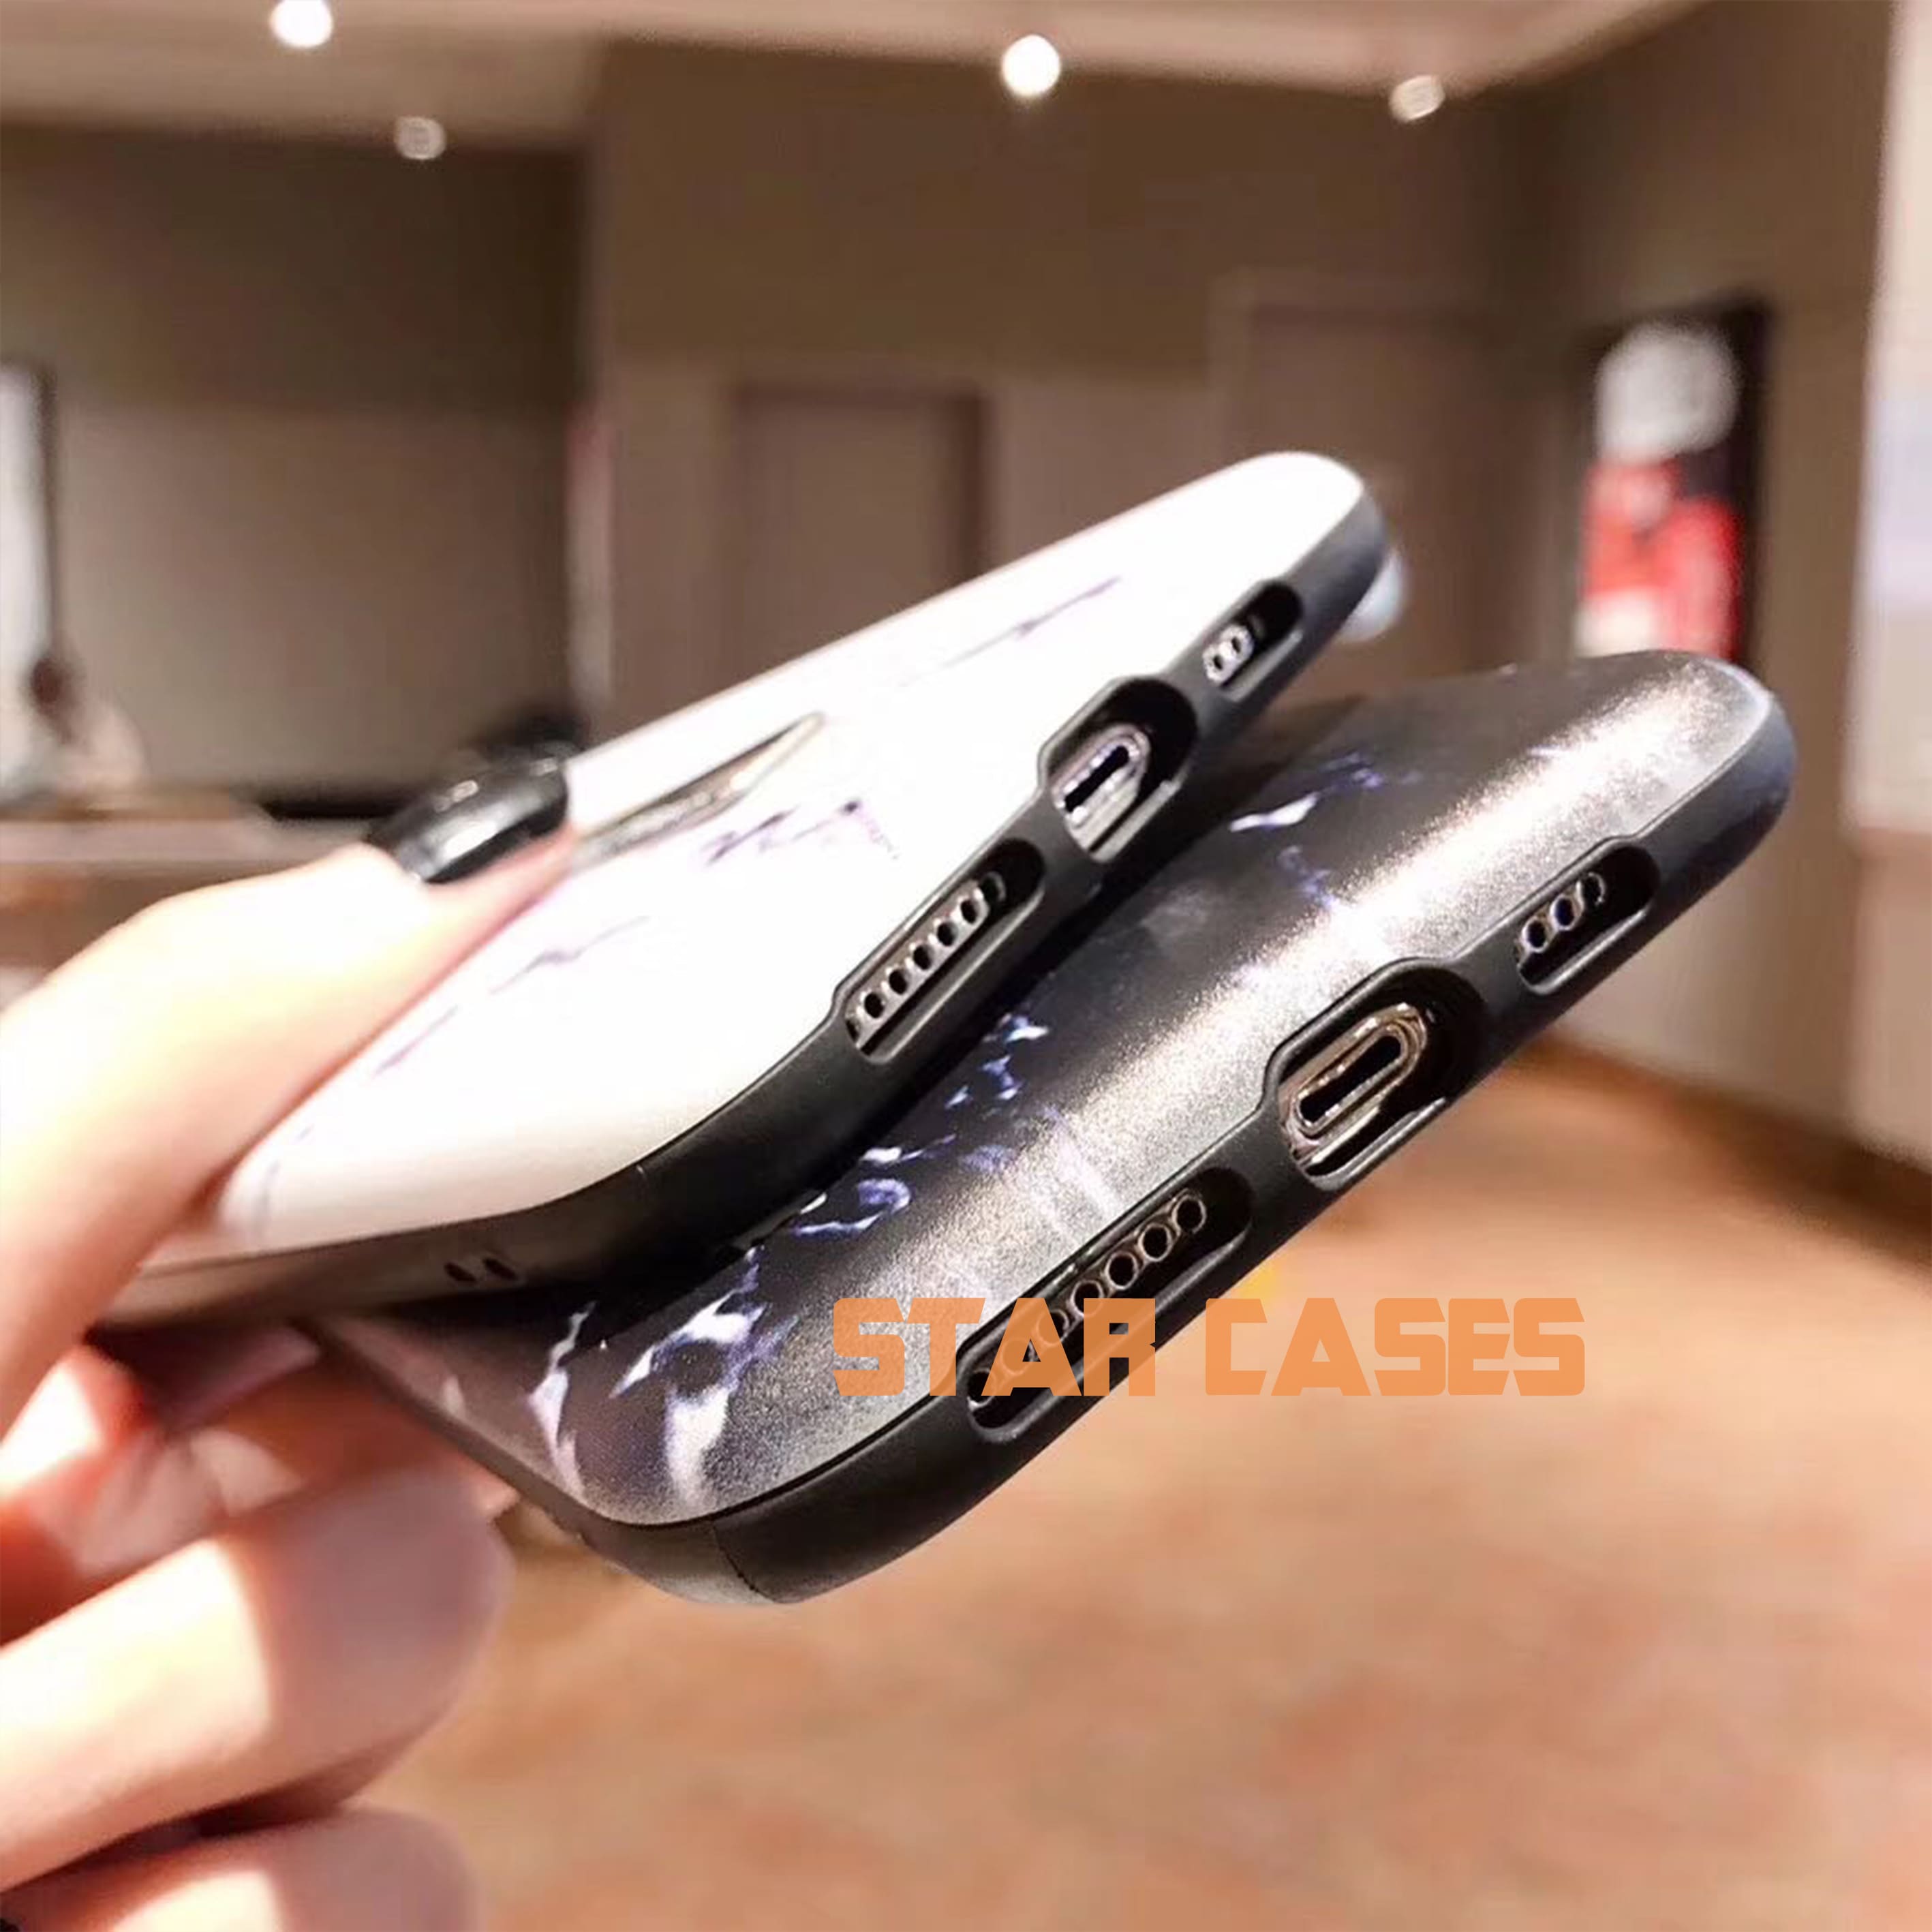 Samsung S20 Marble Shockproof Holder Case